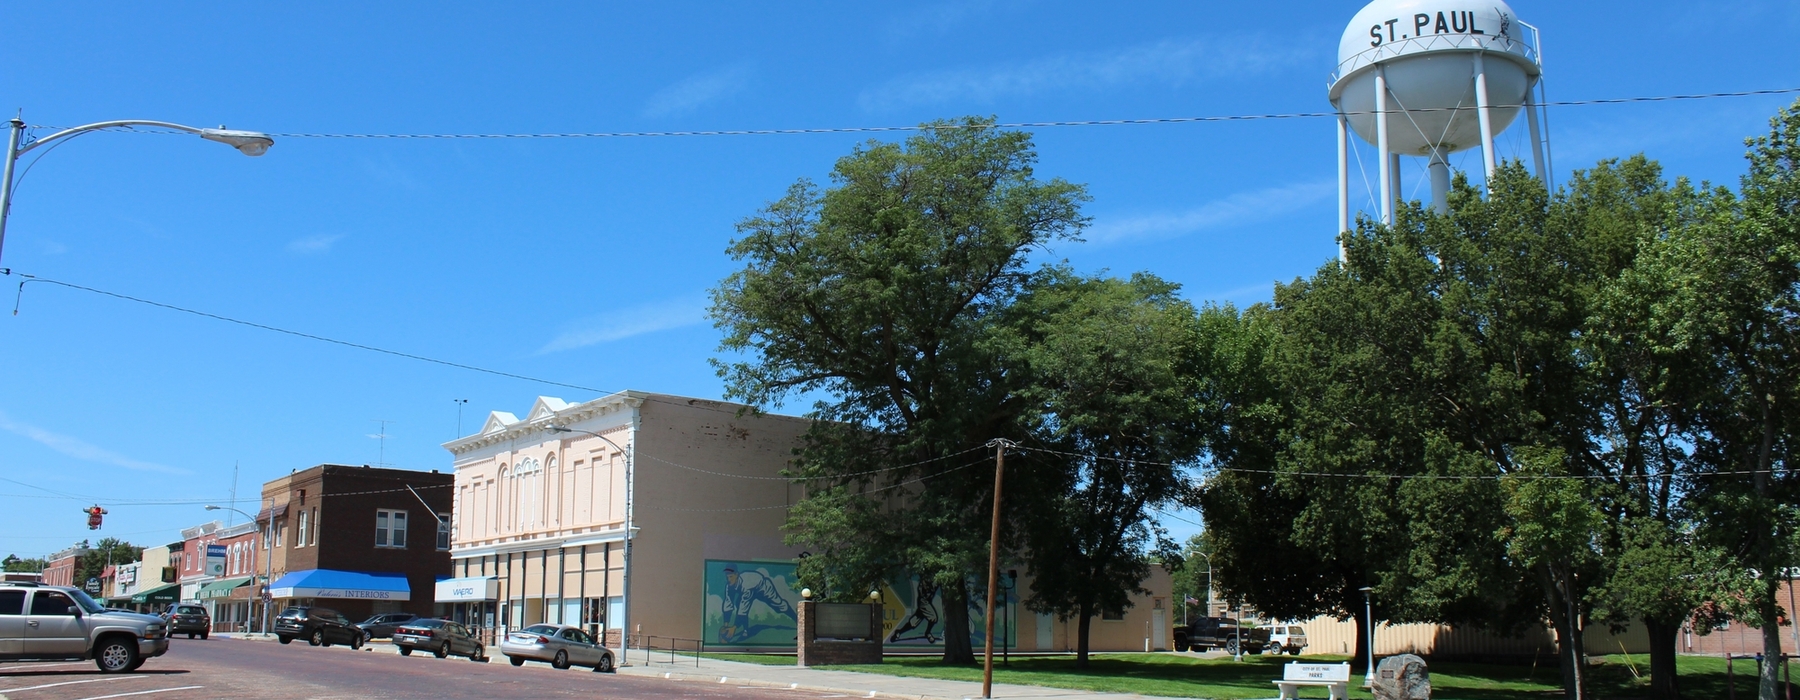 El carrer principal, el parc i la torre de l’aigua de St Paul Nebraska